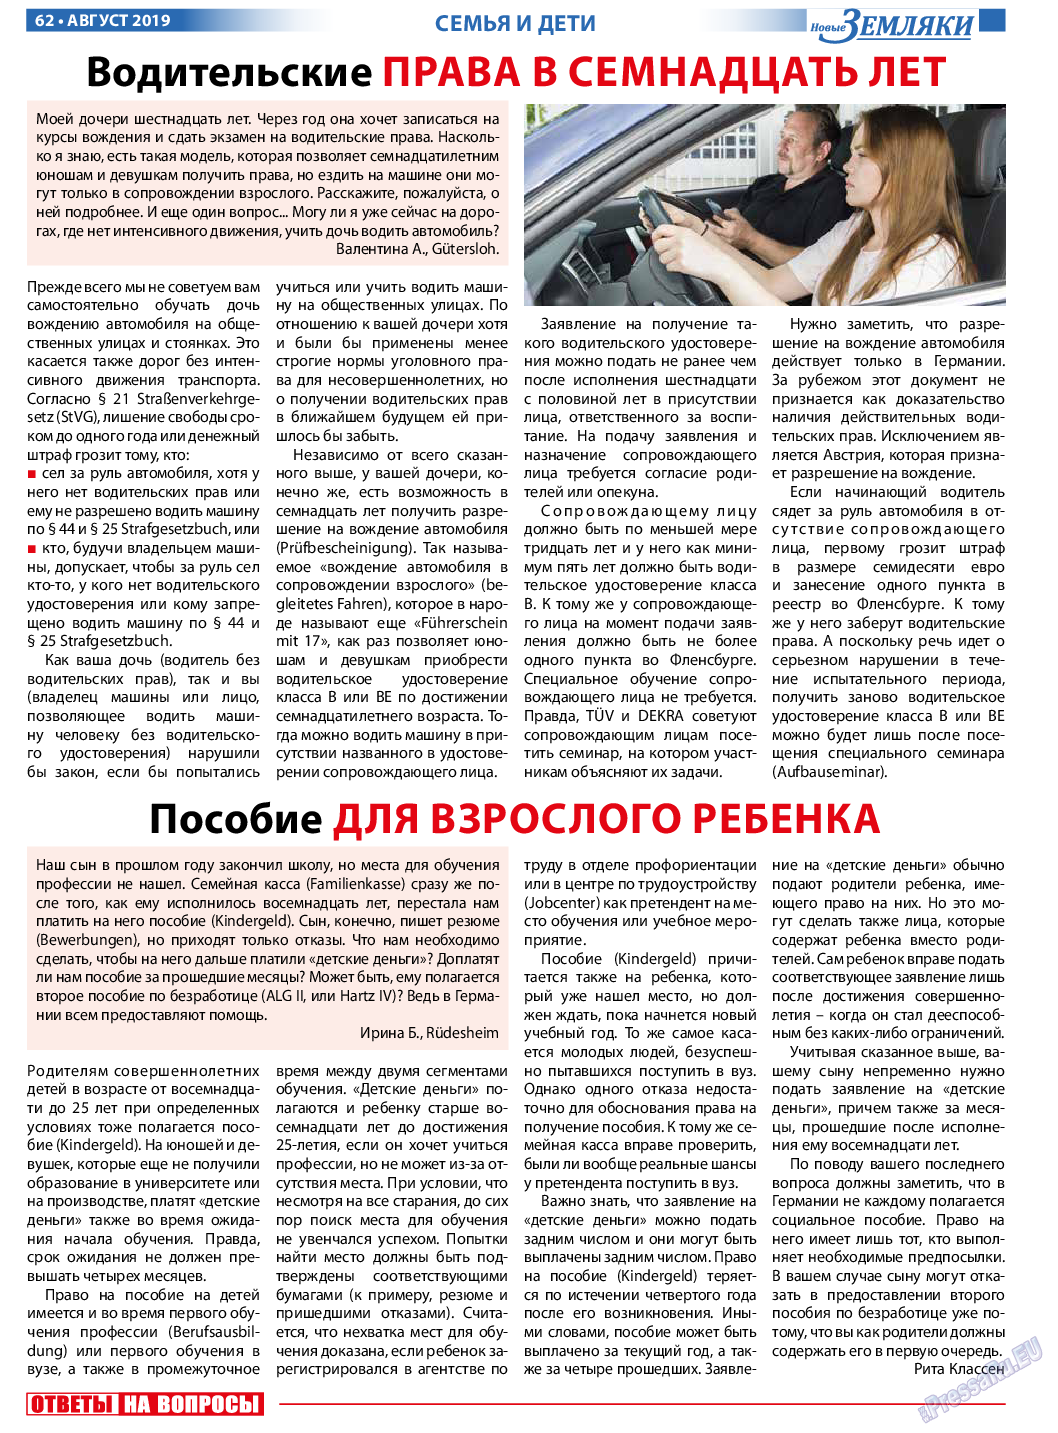 Новые Земляки (газета). 2019 год, номер 8, стр. 62